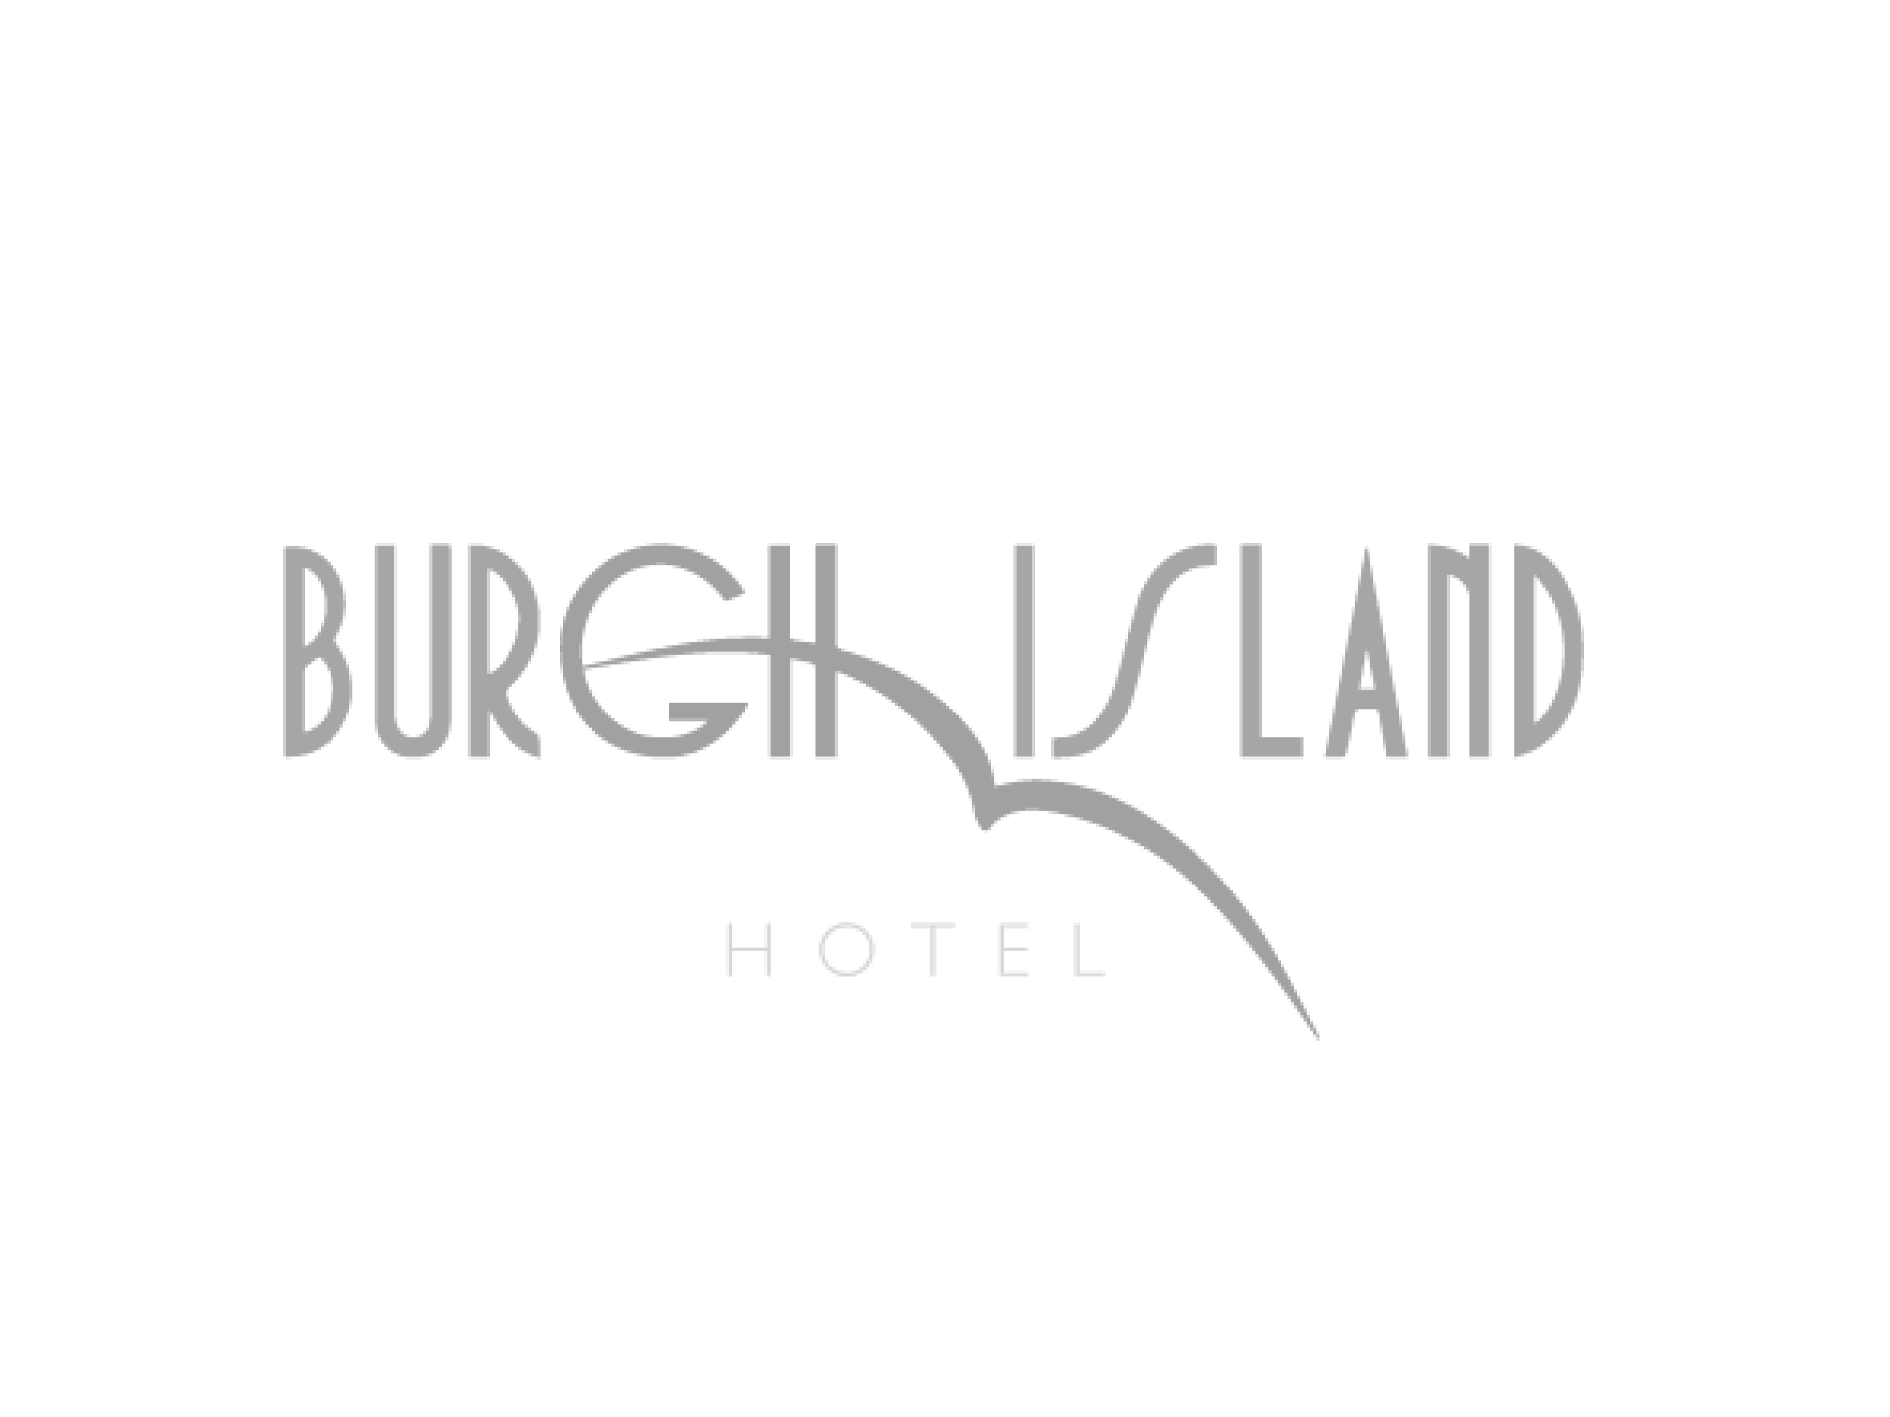 Burgh Island Hotel grey